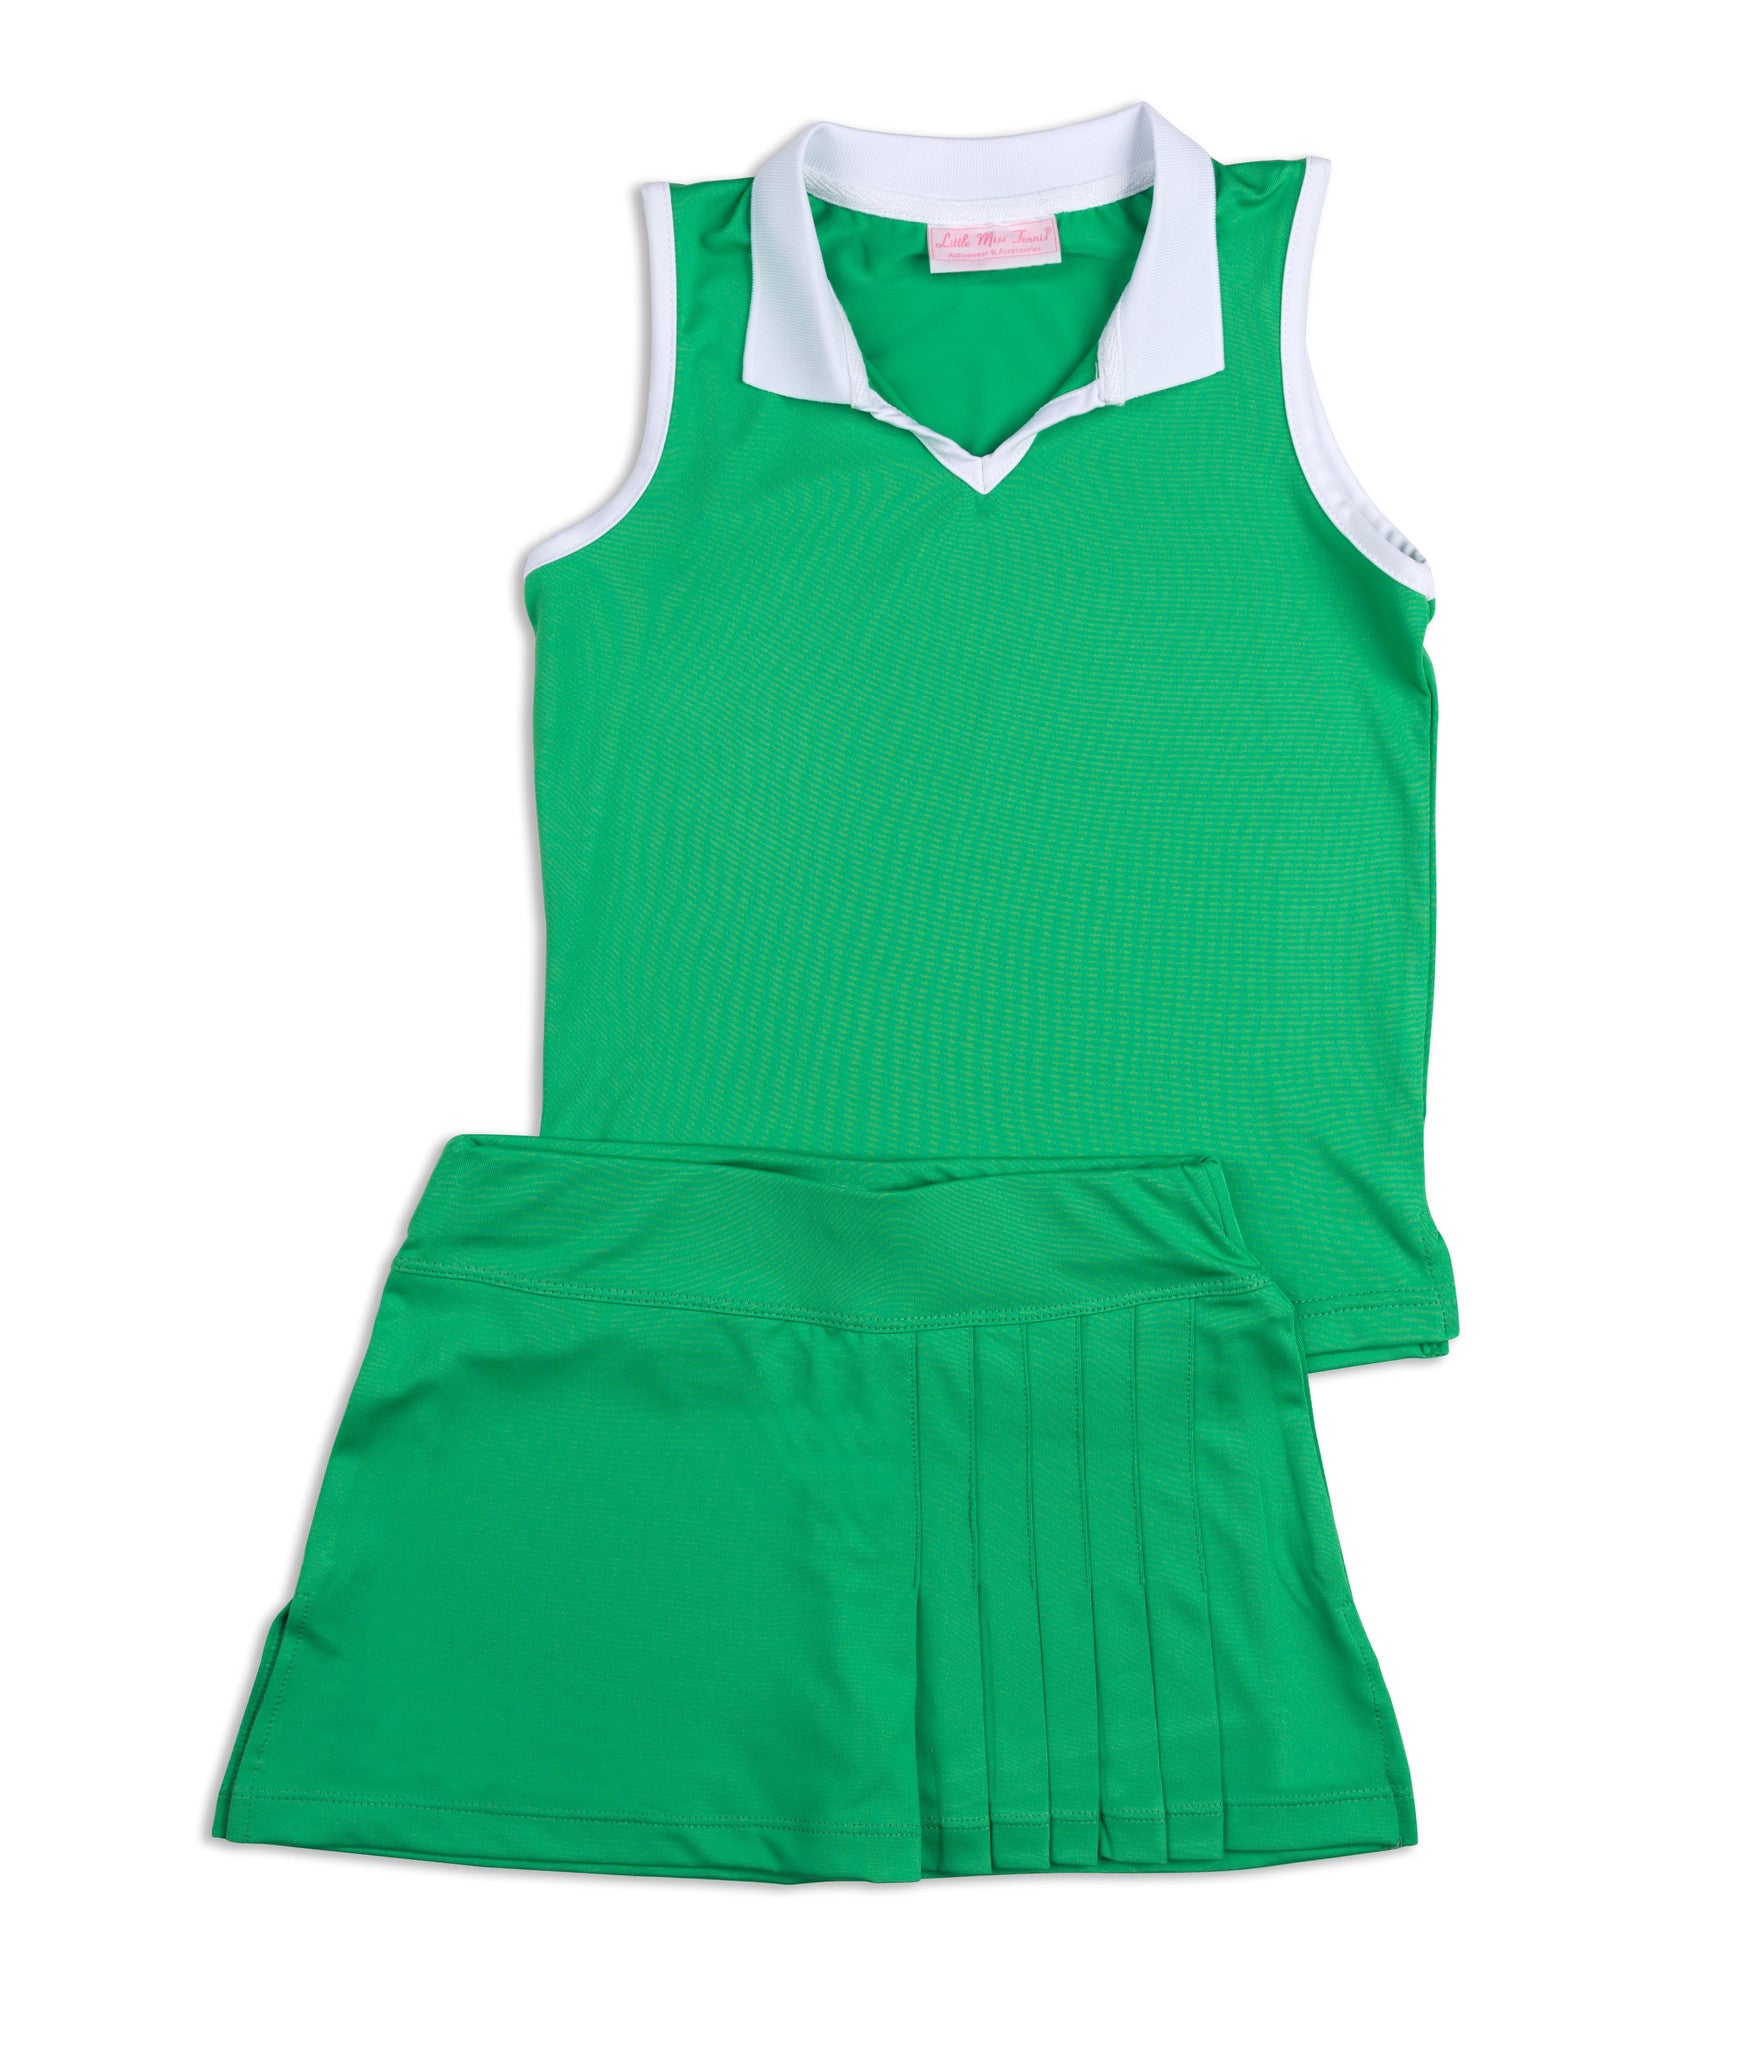 Everyday Club Skirt Green - Little Miss Tennis